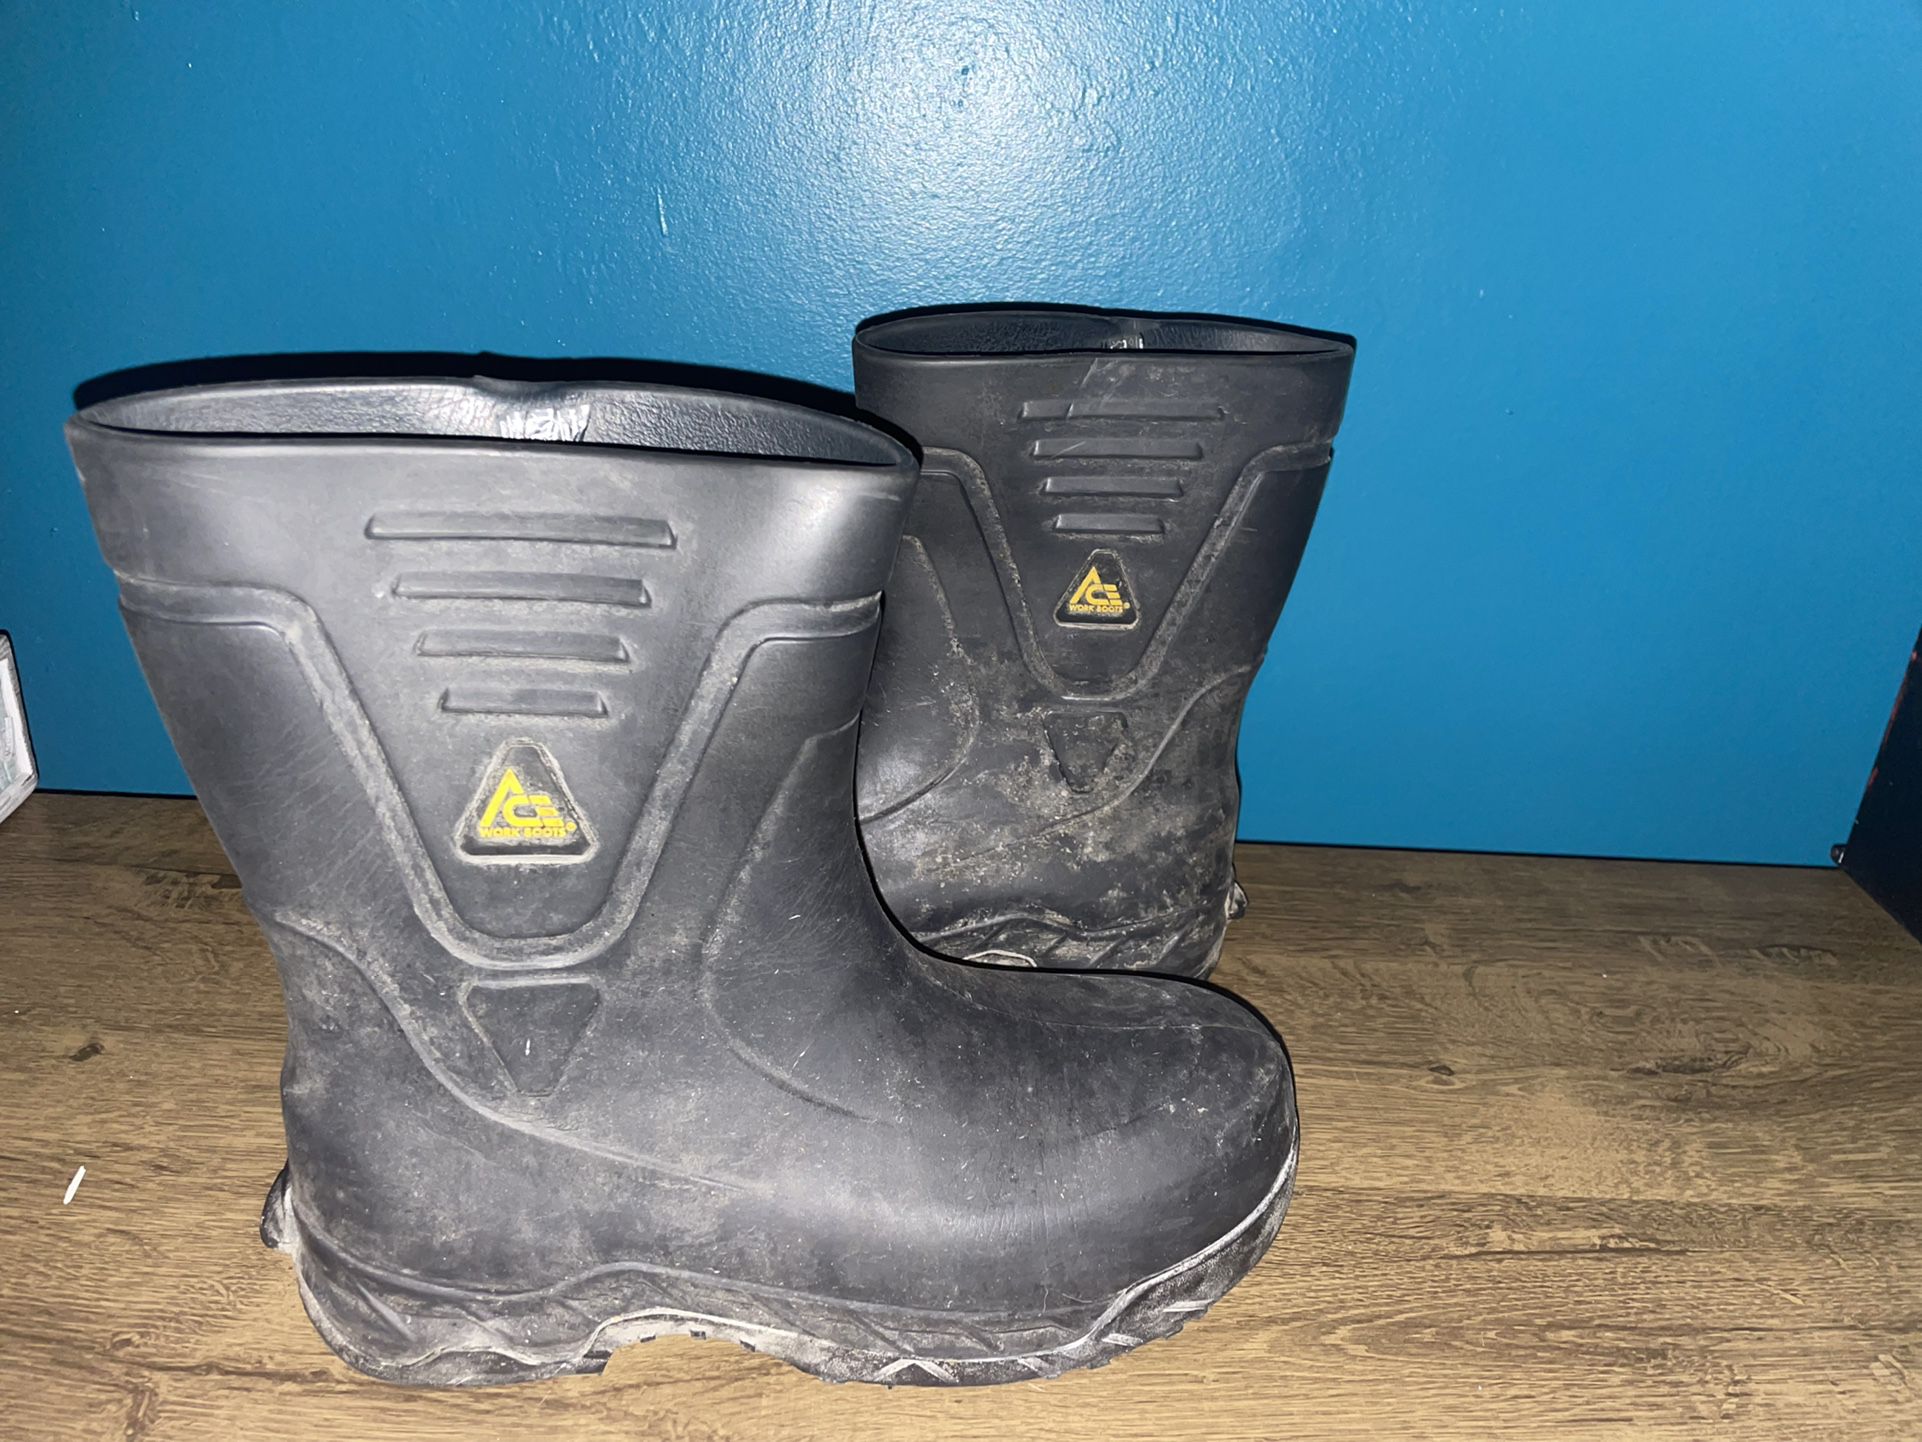 Ace Slip/Water Resistant Work Boots     Bullfrog Pro II